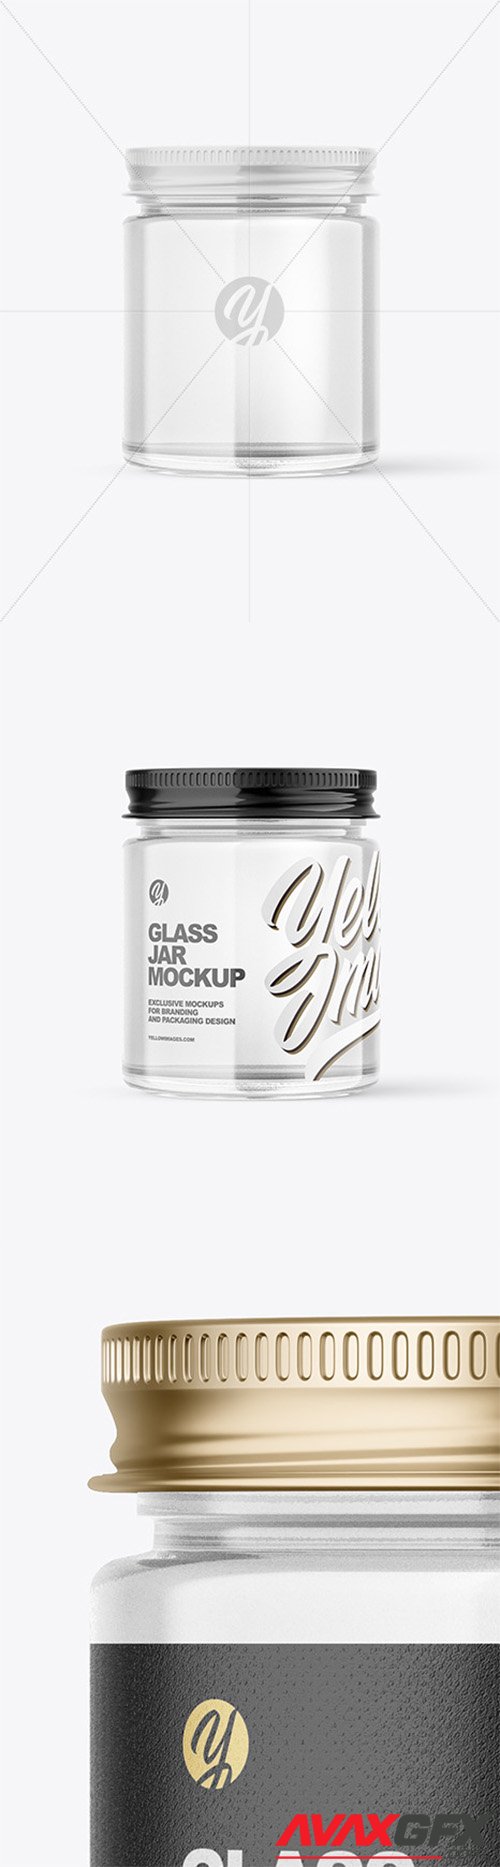 Clear Glass Jar Mockup 79897